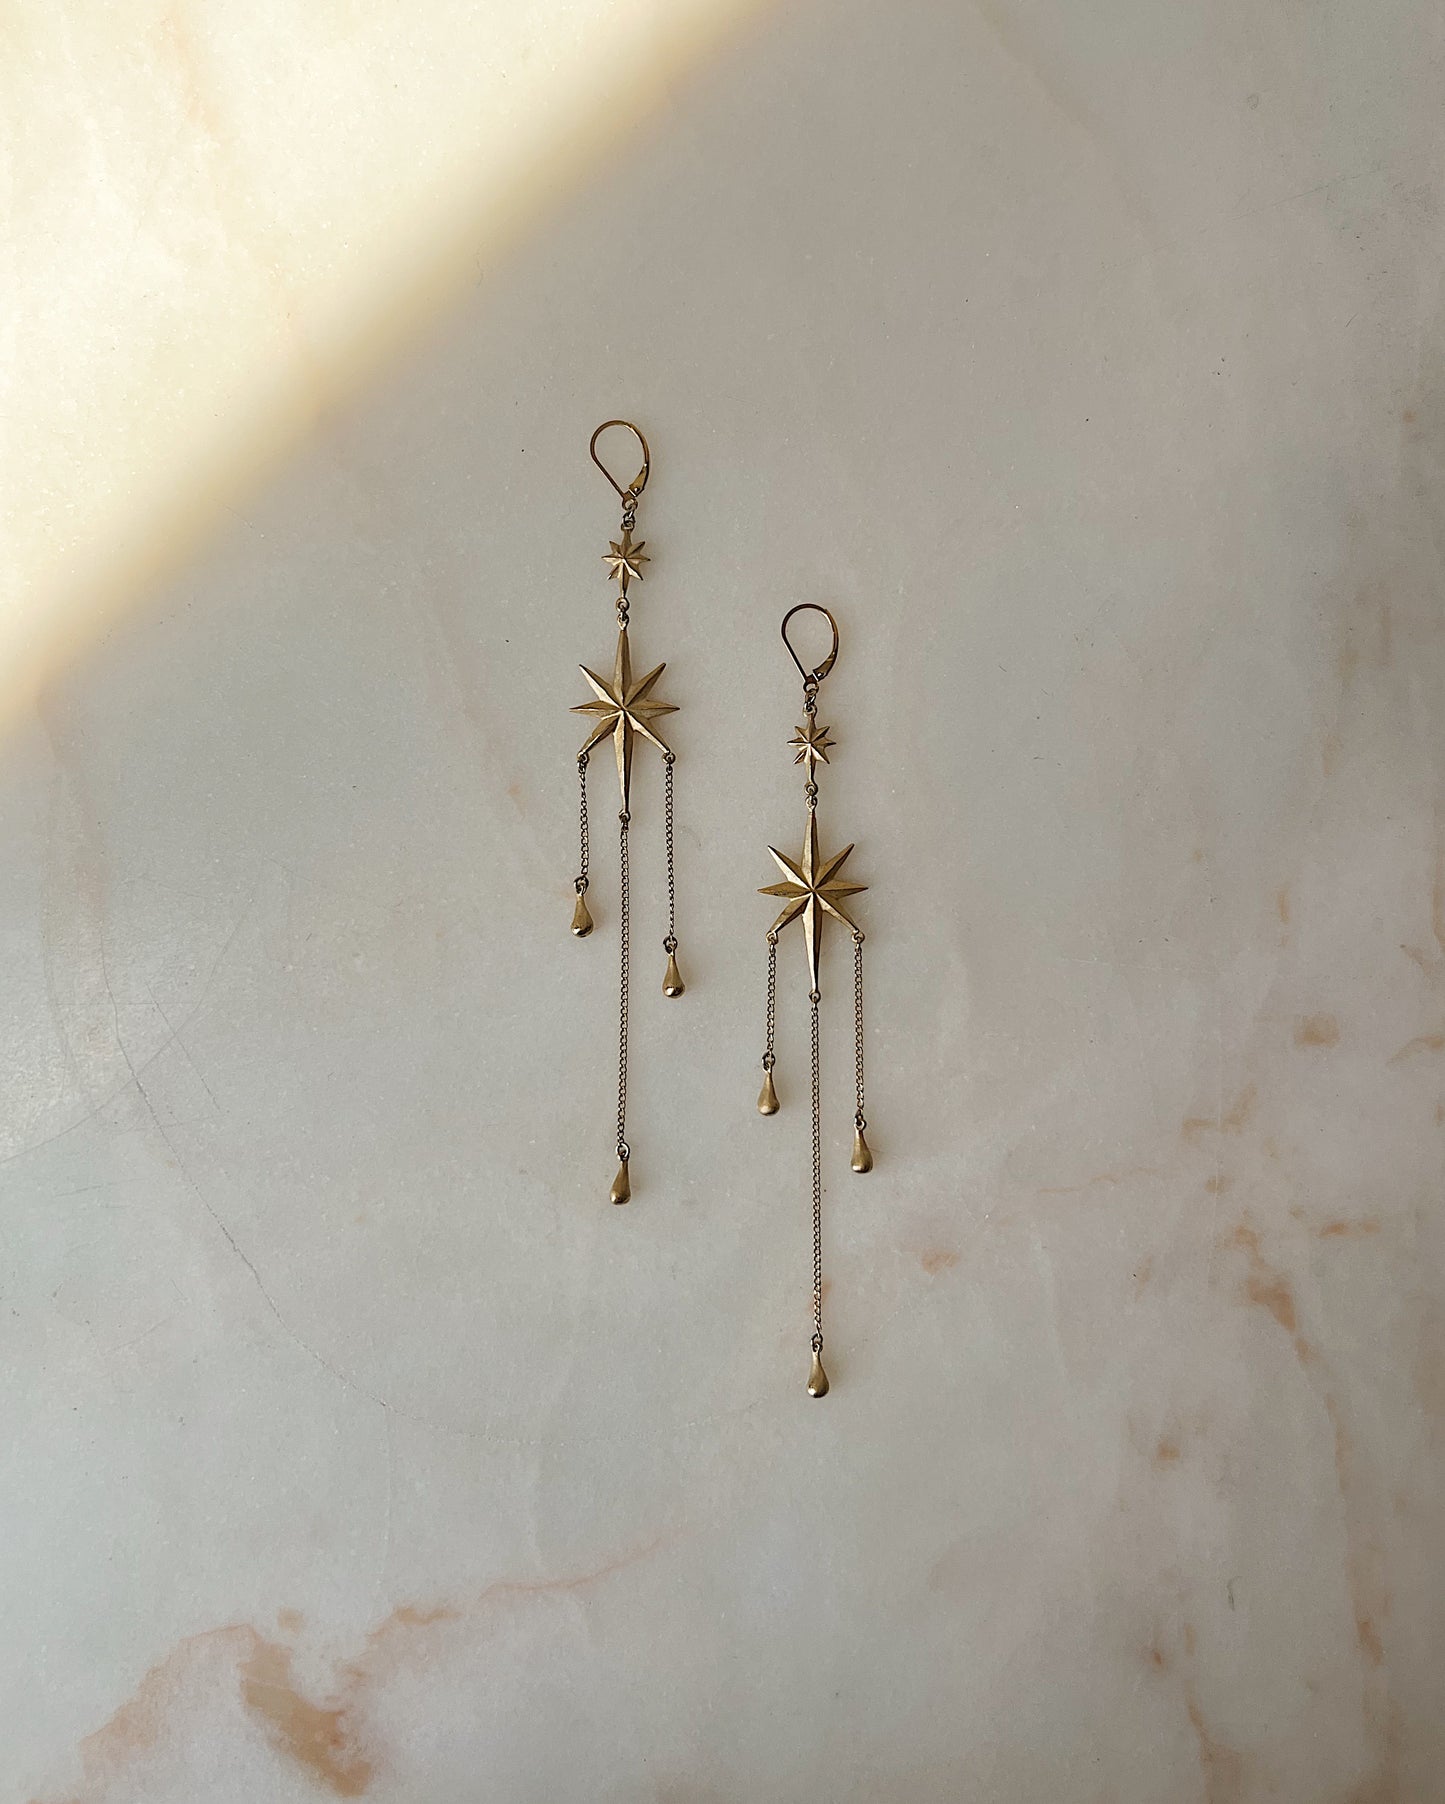 The Stars Aligned // XL Earrings // 14k gold